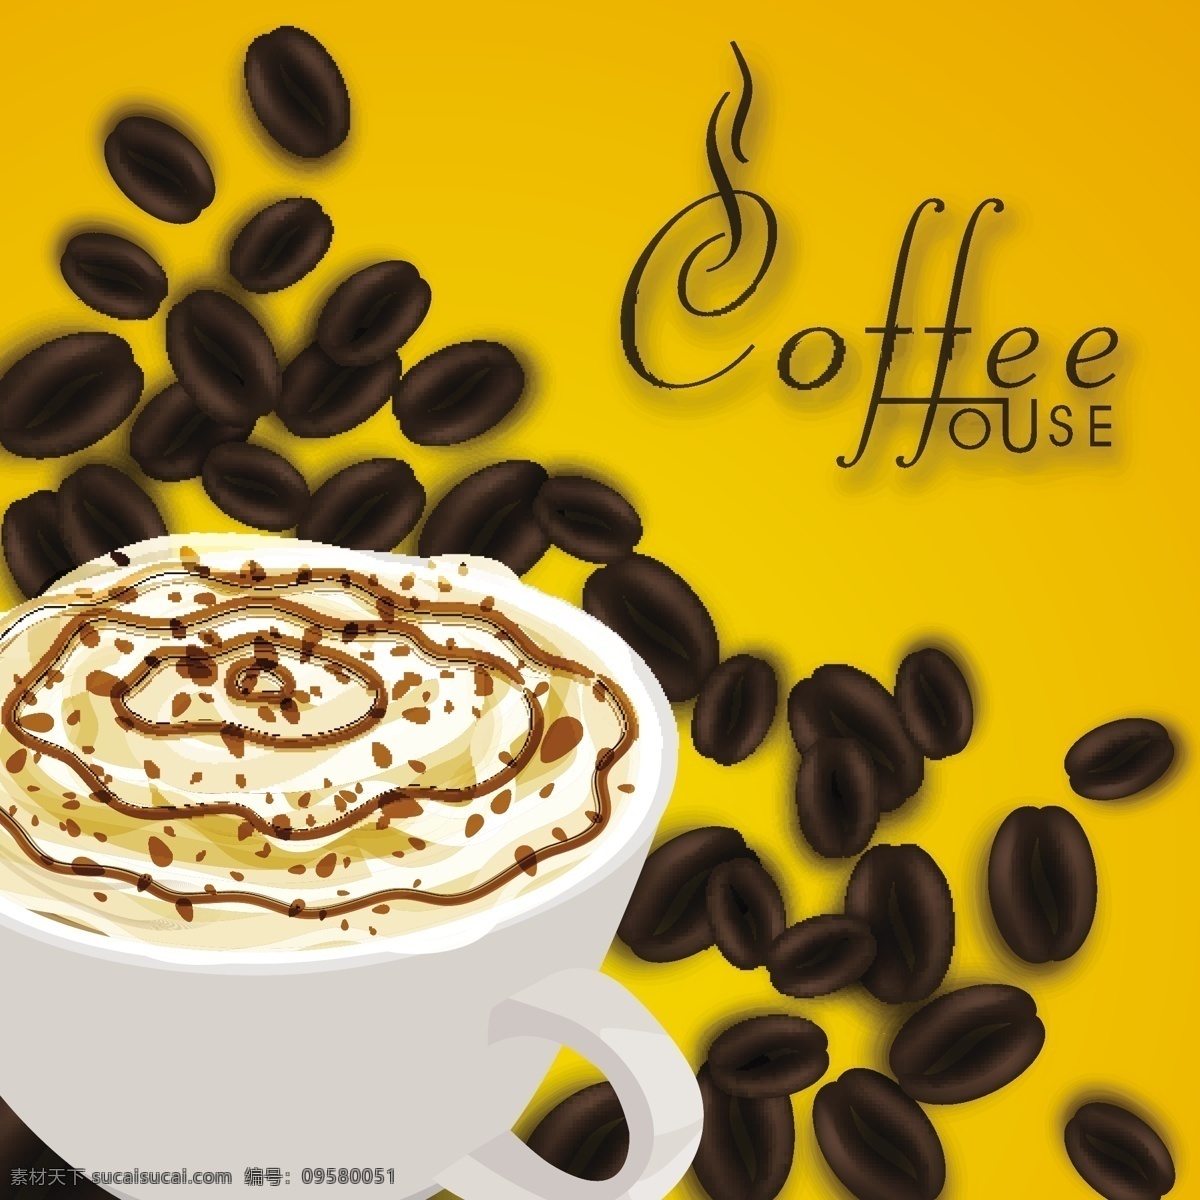 咖啡豆 咖啡杯 杯子 杯具 酒水饮料 餐饮美食 标志图标 矢量素材 黄色